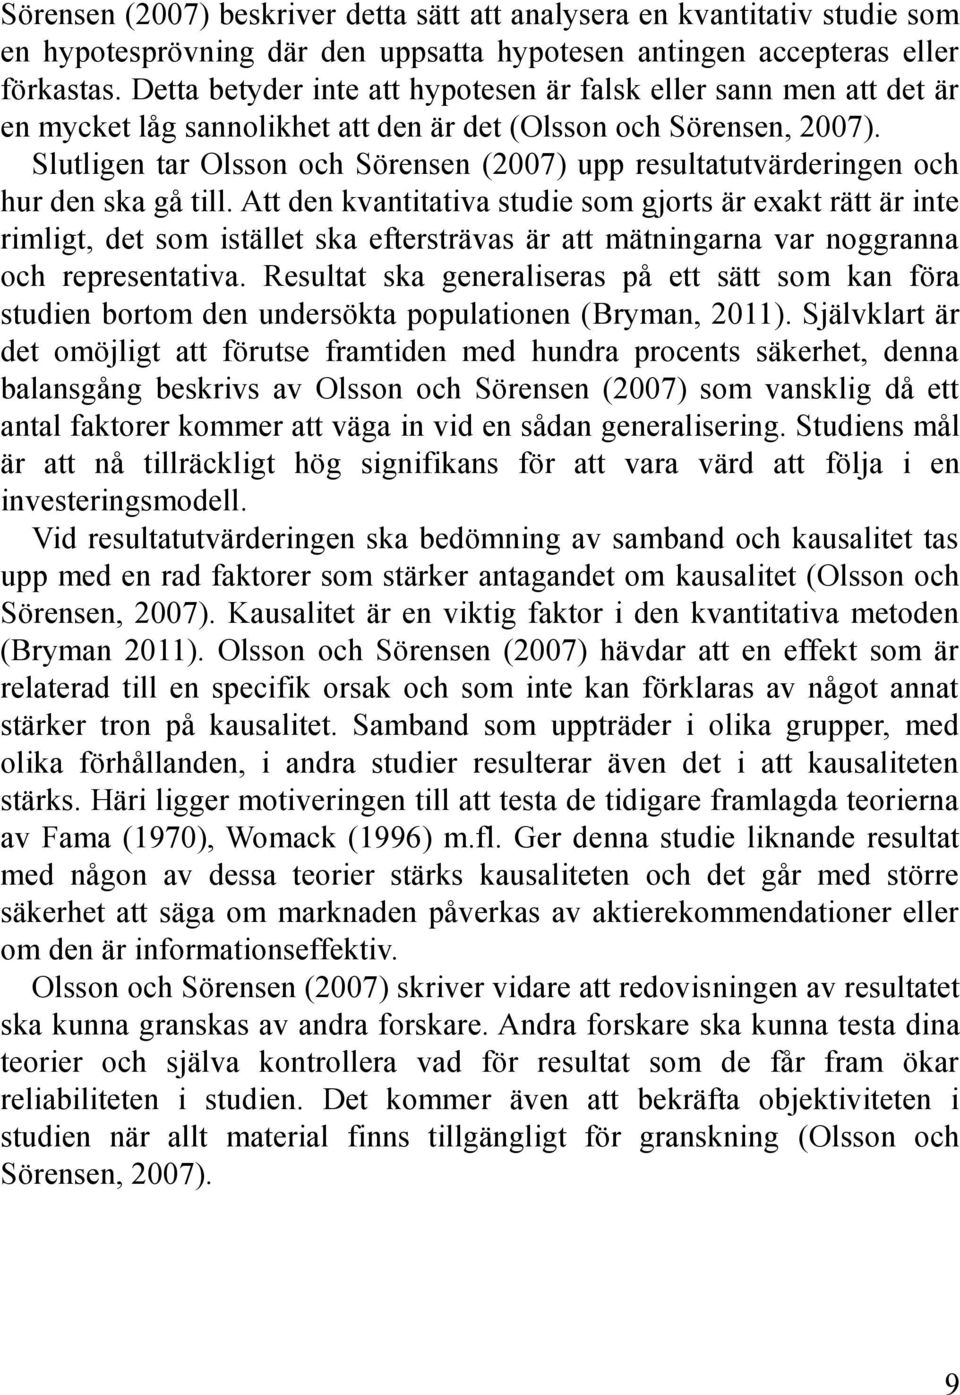 Slutligen tar Olsson och Sörensen (2007) upp resultatutvärderingen och hur den ska gå till.